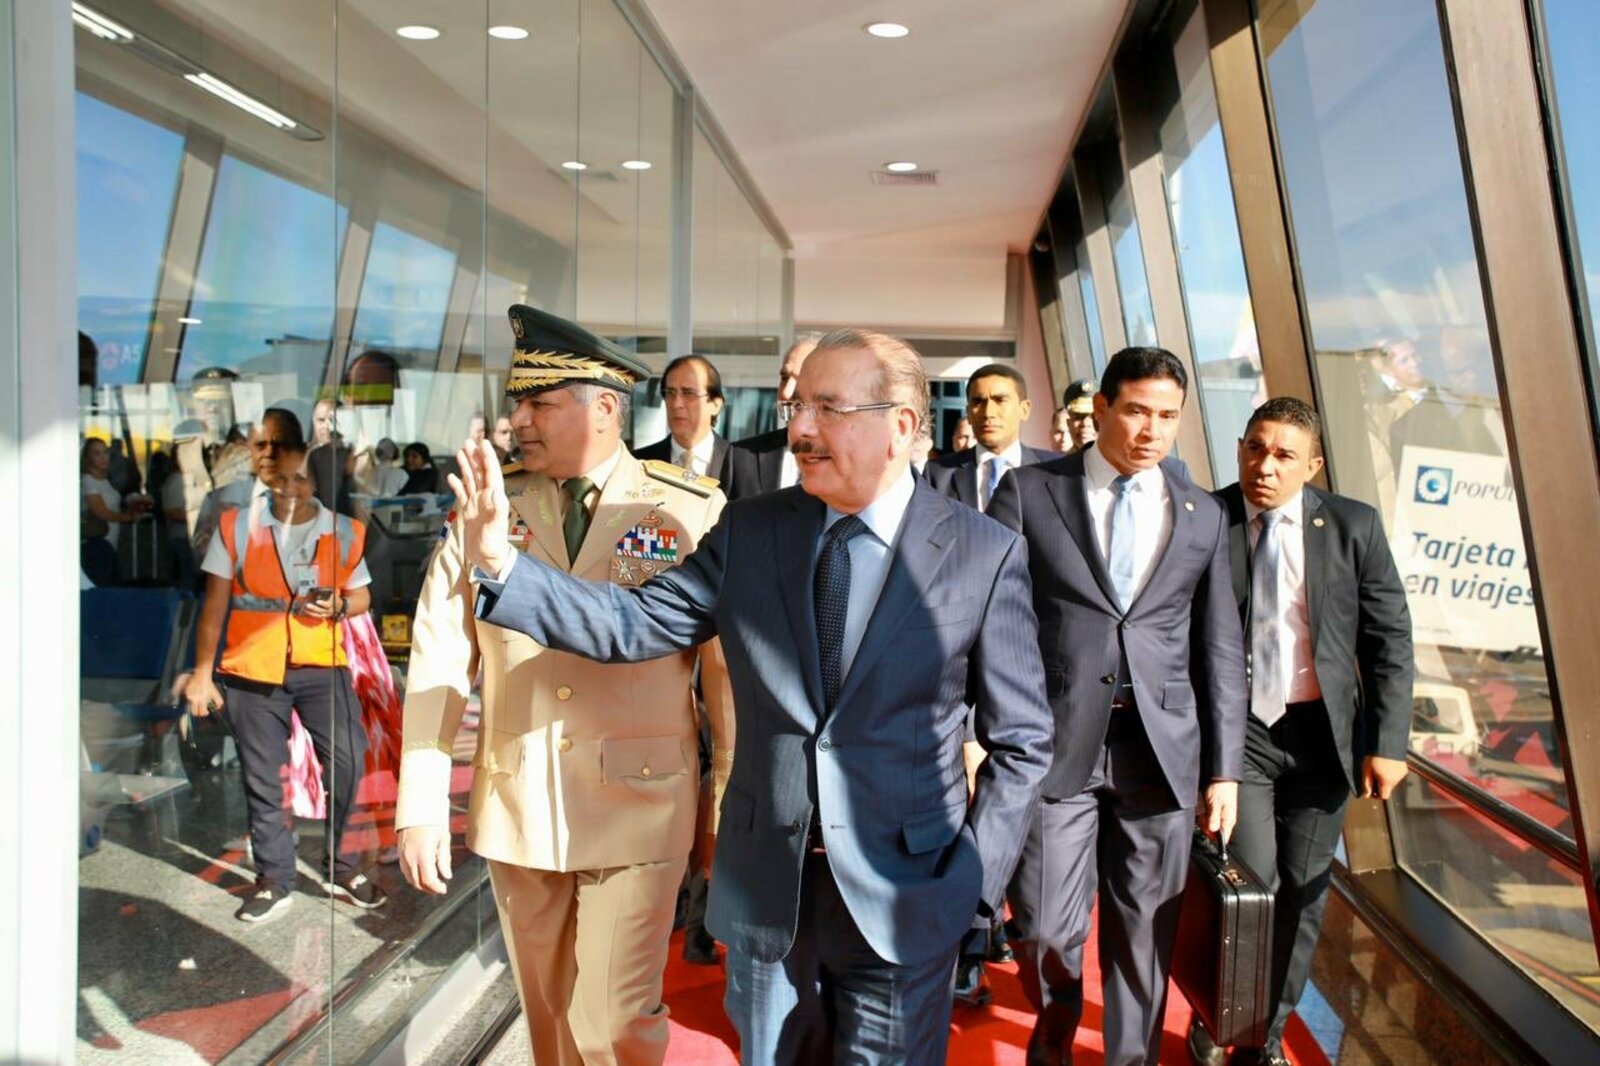 REPÚBLICA DOMINICANA: Presidente Danilo Medina regresa al país, procedente de Madrid, luego de participar en COP25